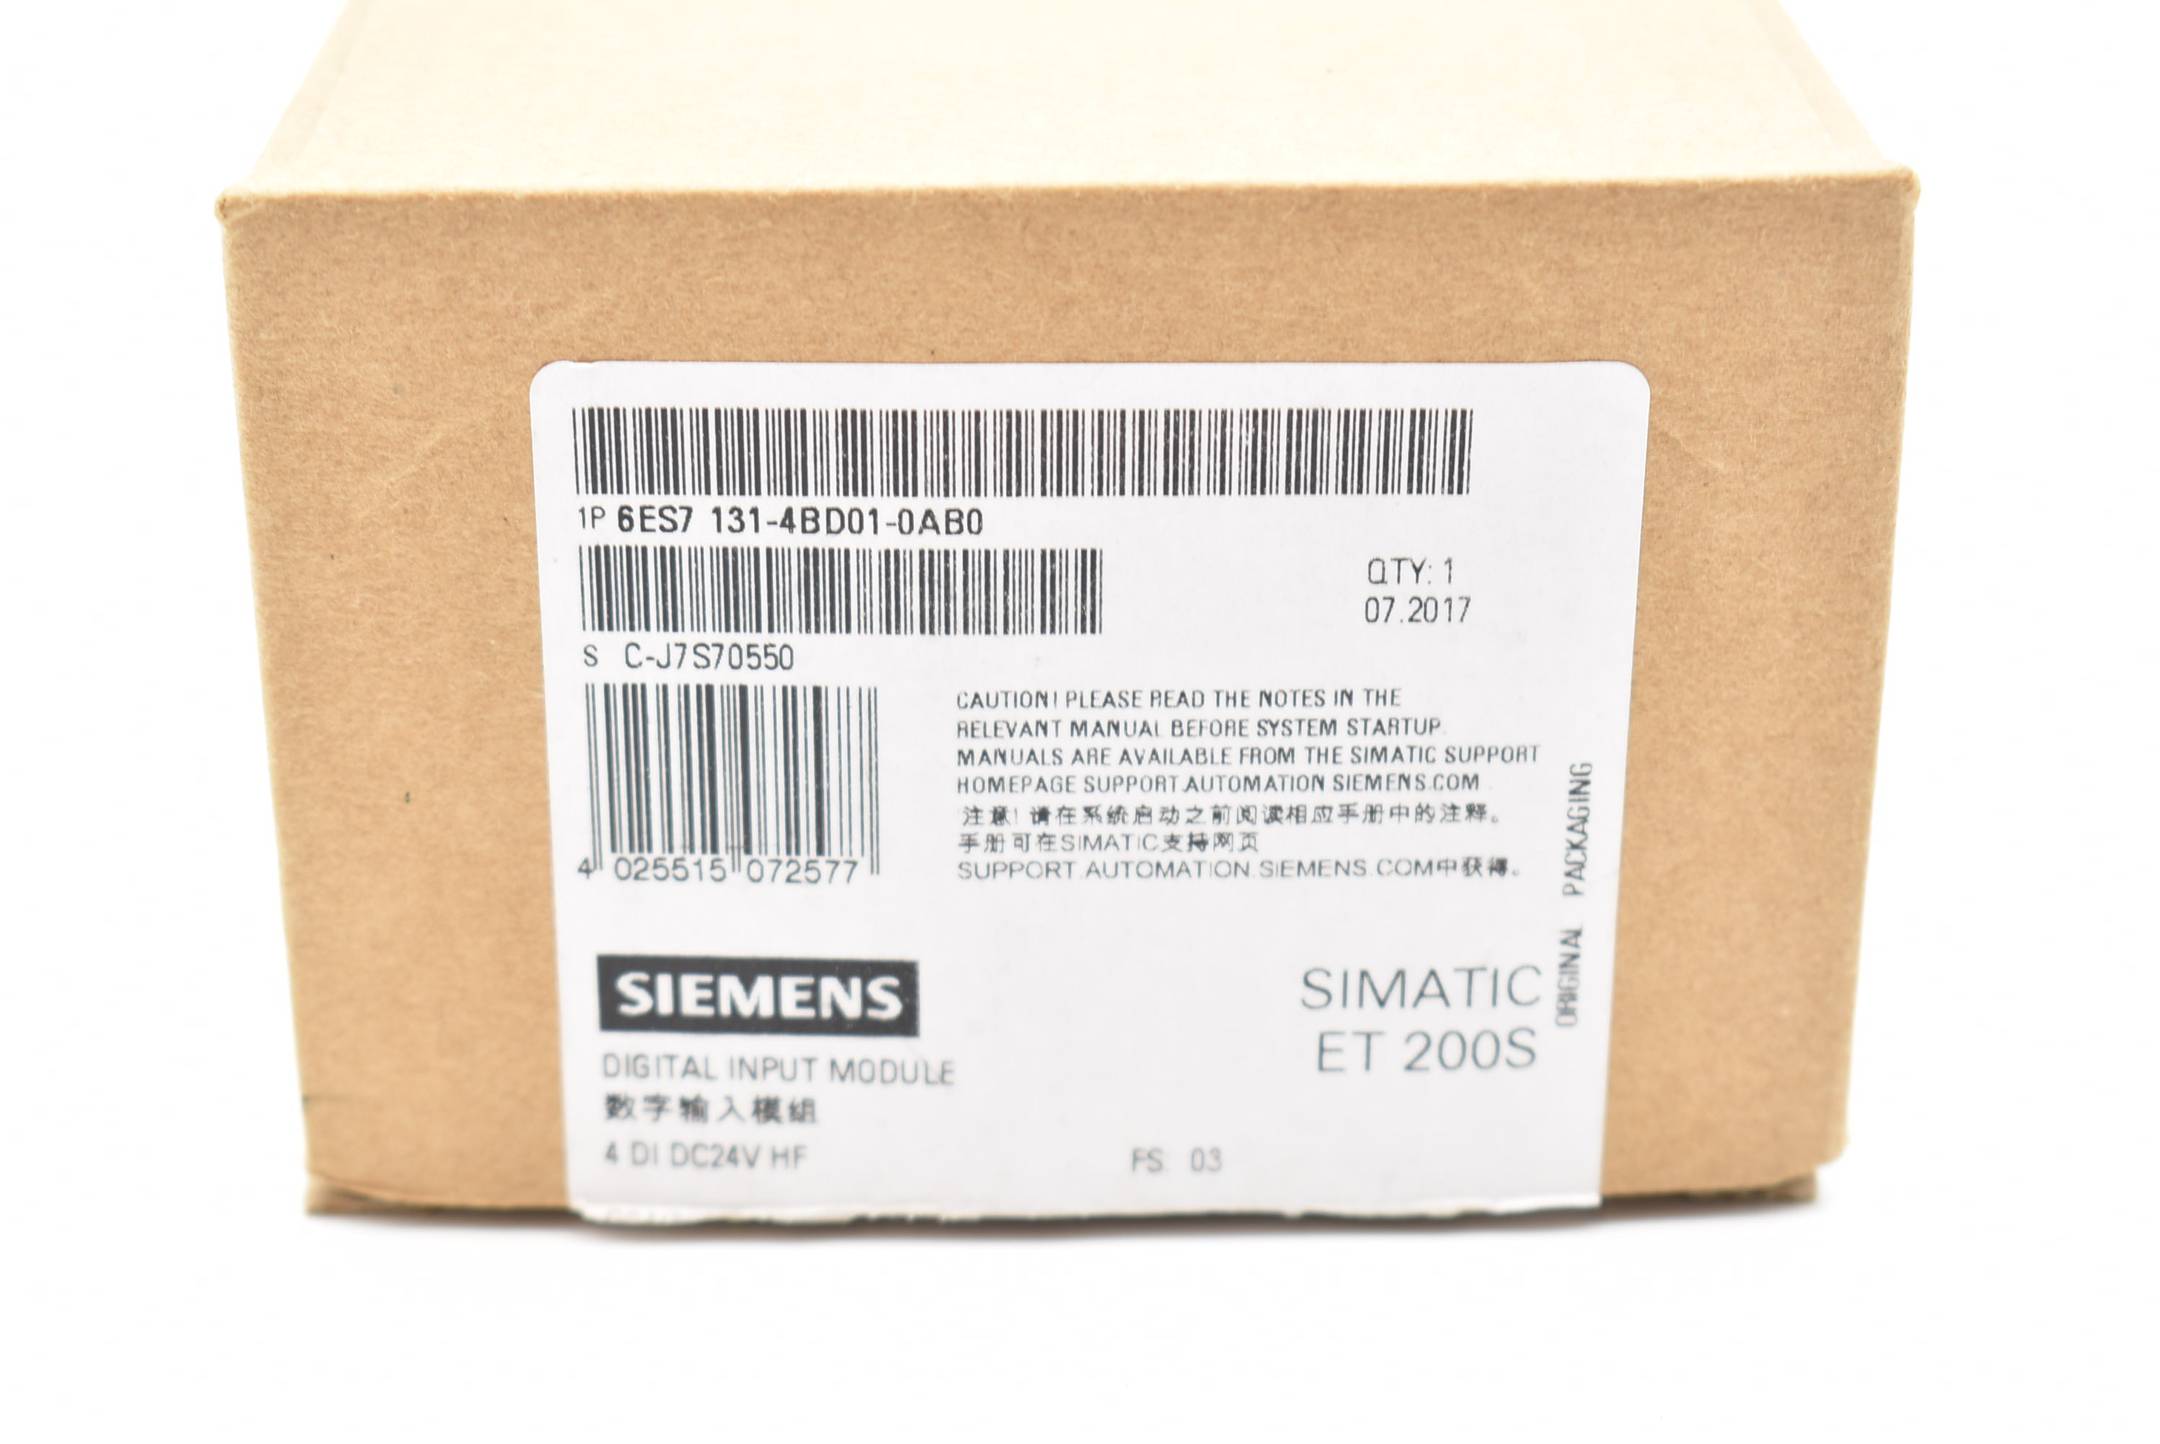 Siemens simatic ET 200S 6ES7 131-4BD01-0AB0 ( 6ES7131-4BD01-0AB0 ) FS.03 - 3 pcs